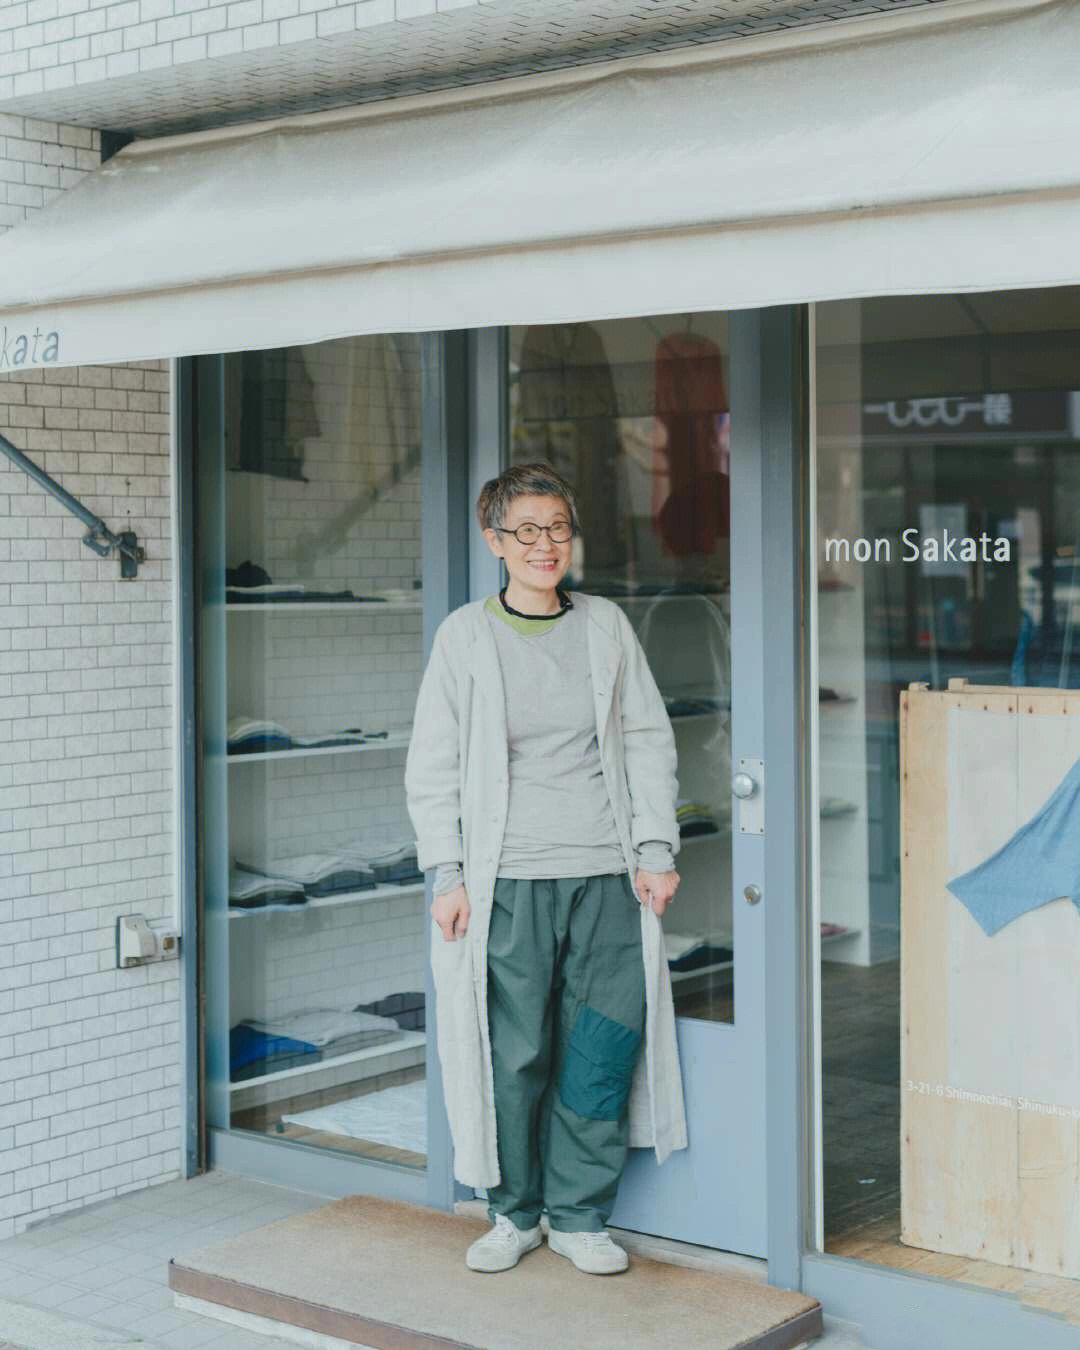 日本服装店mon sakata店主 73岁的坂田敏子女士于1947年出生